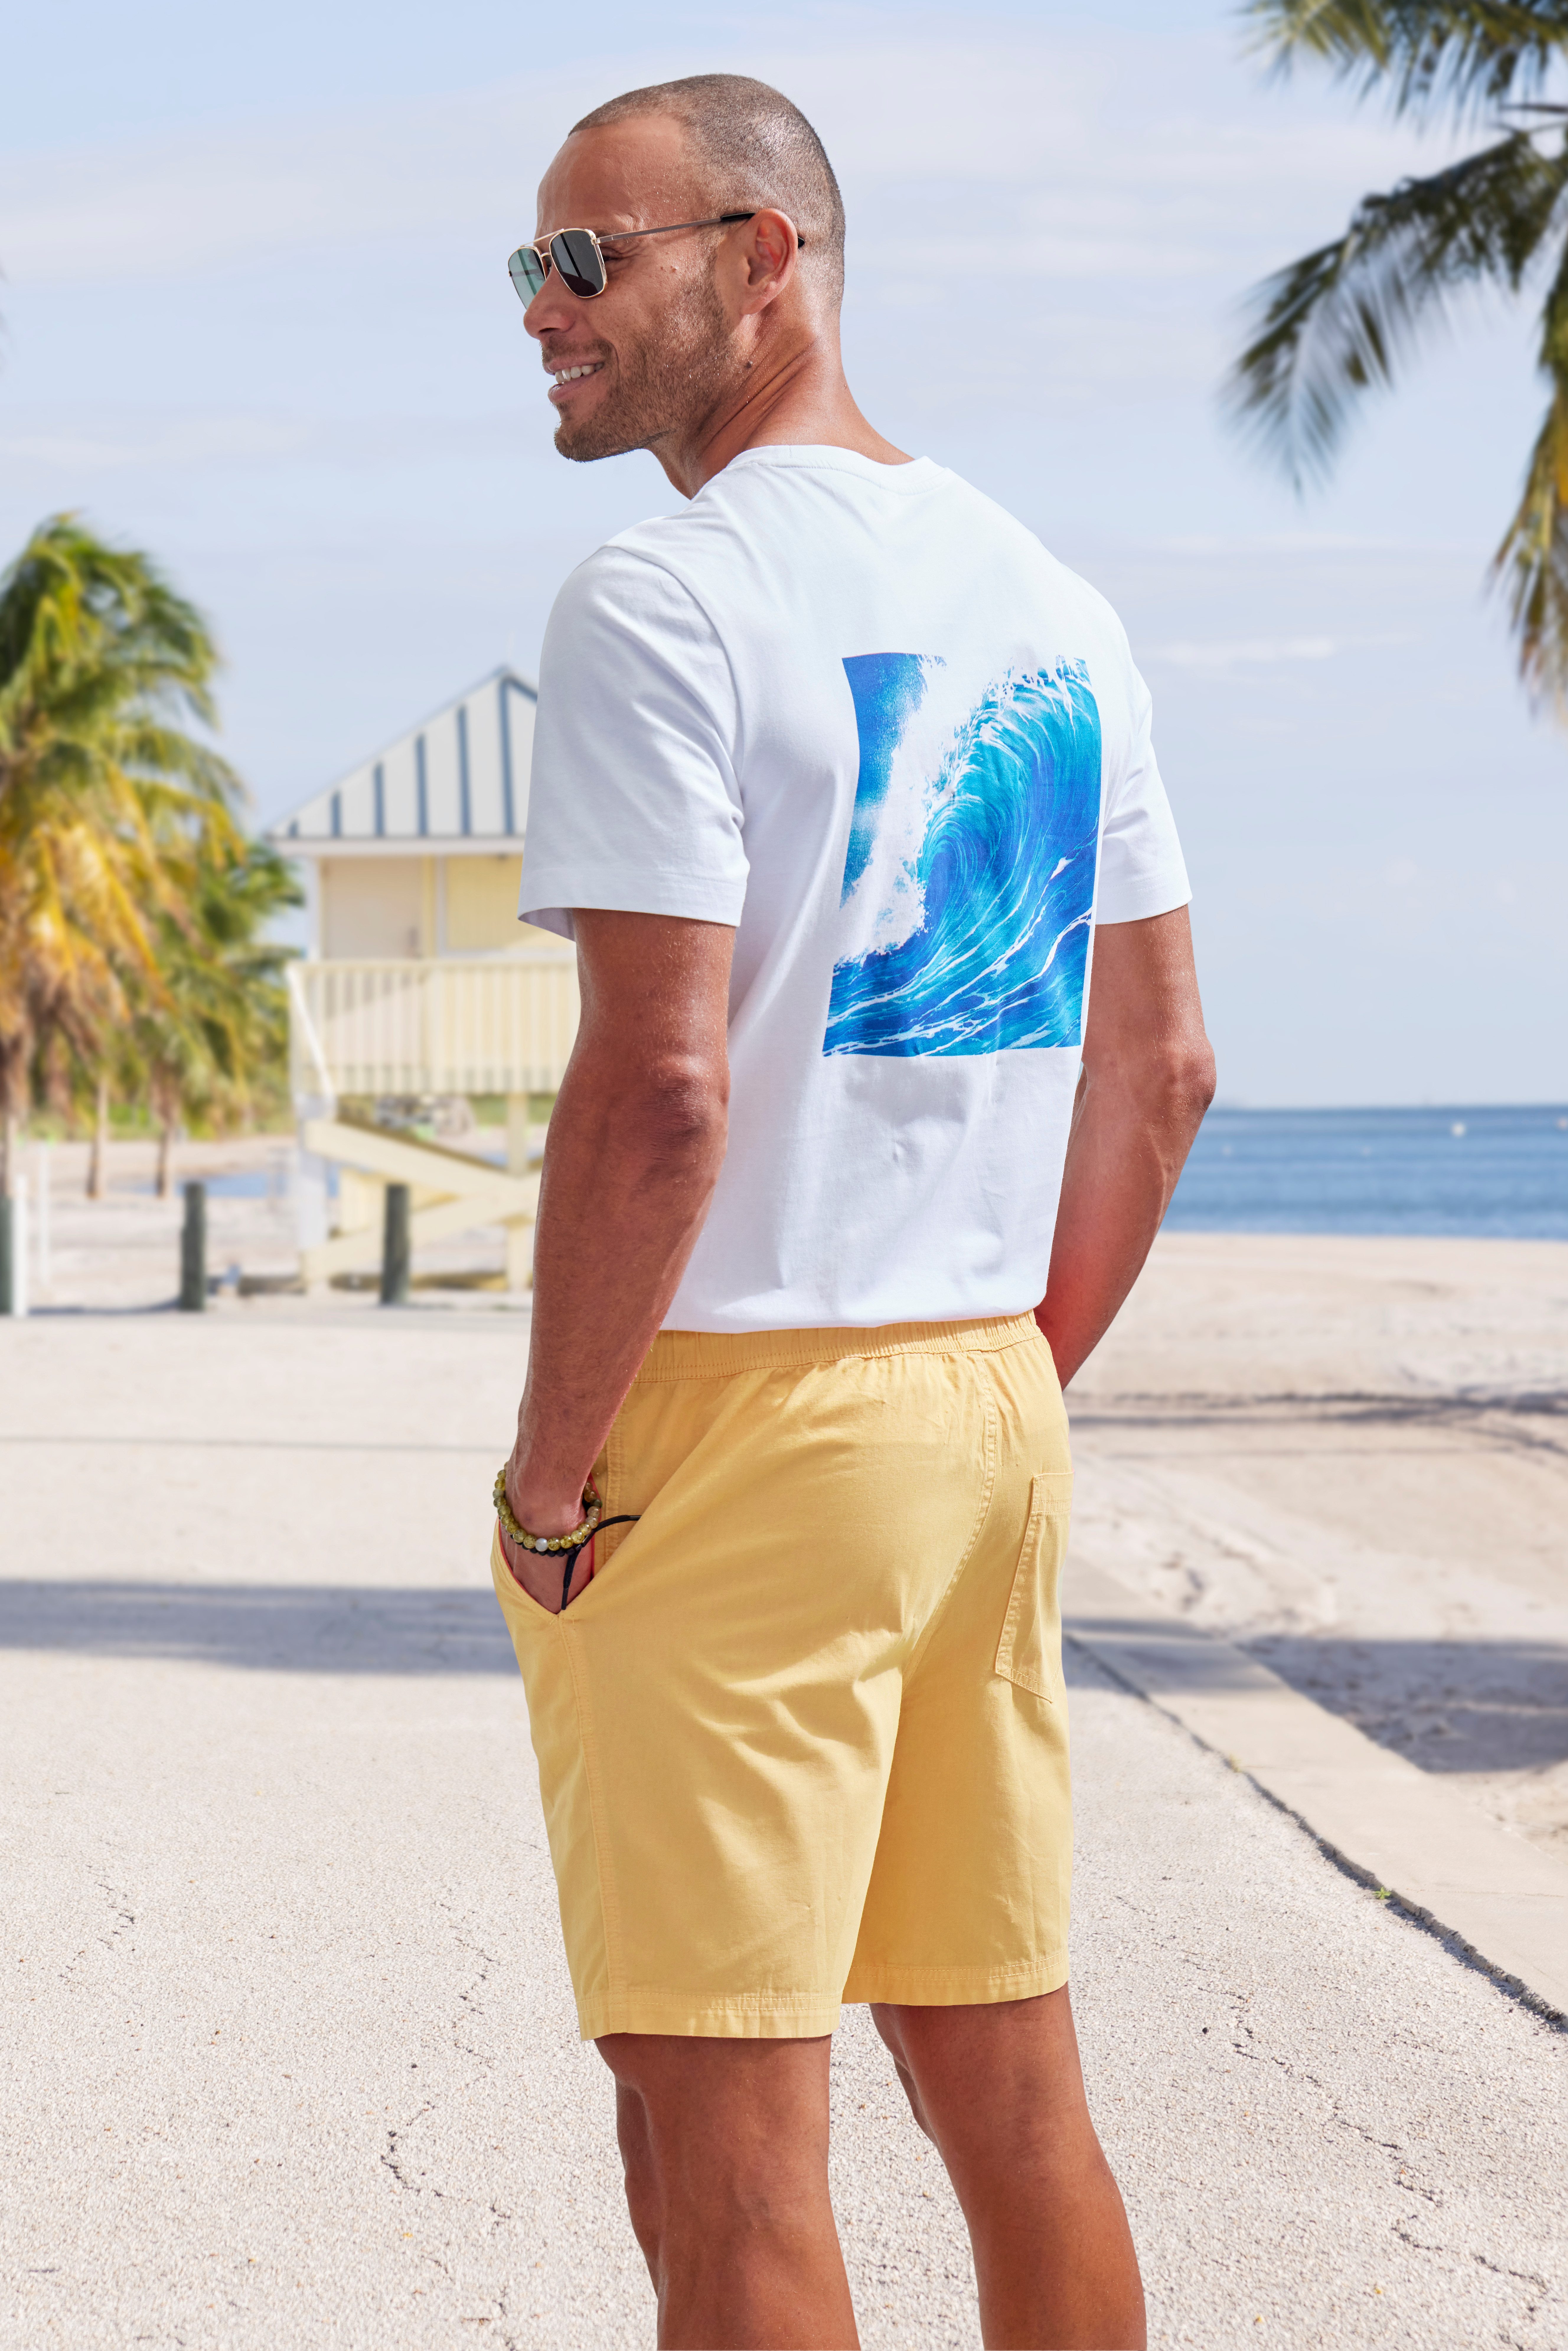 John Devin T-Shirt mit großem Rückendruck, Regular Fit, Kurzarm, Freizeitshirt, Rundhals, Print, reine Baumwolle